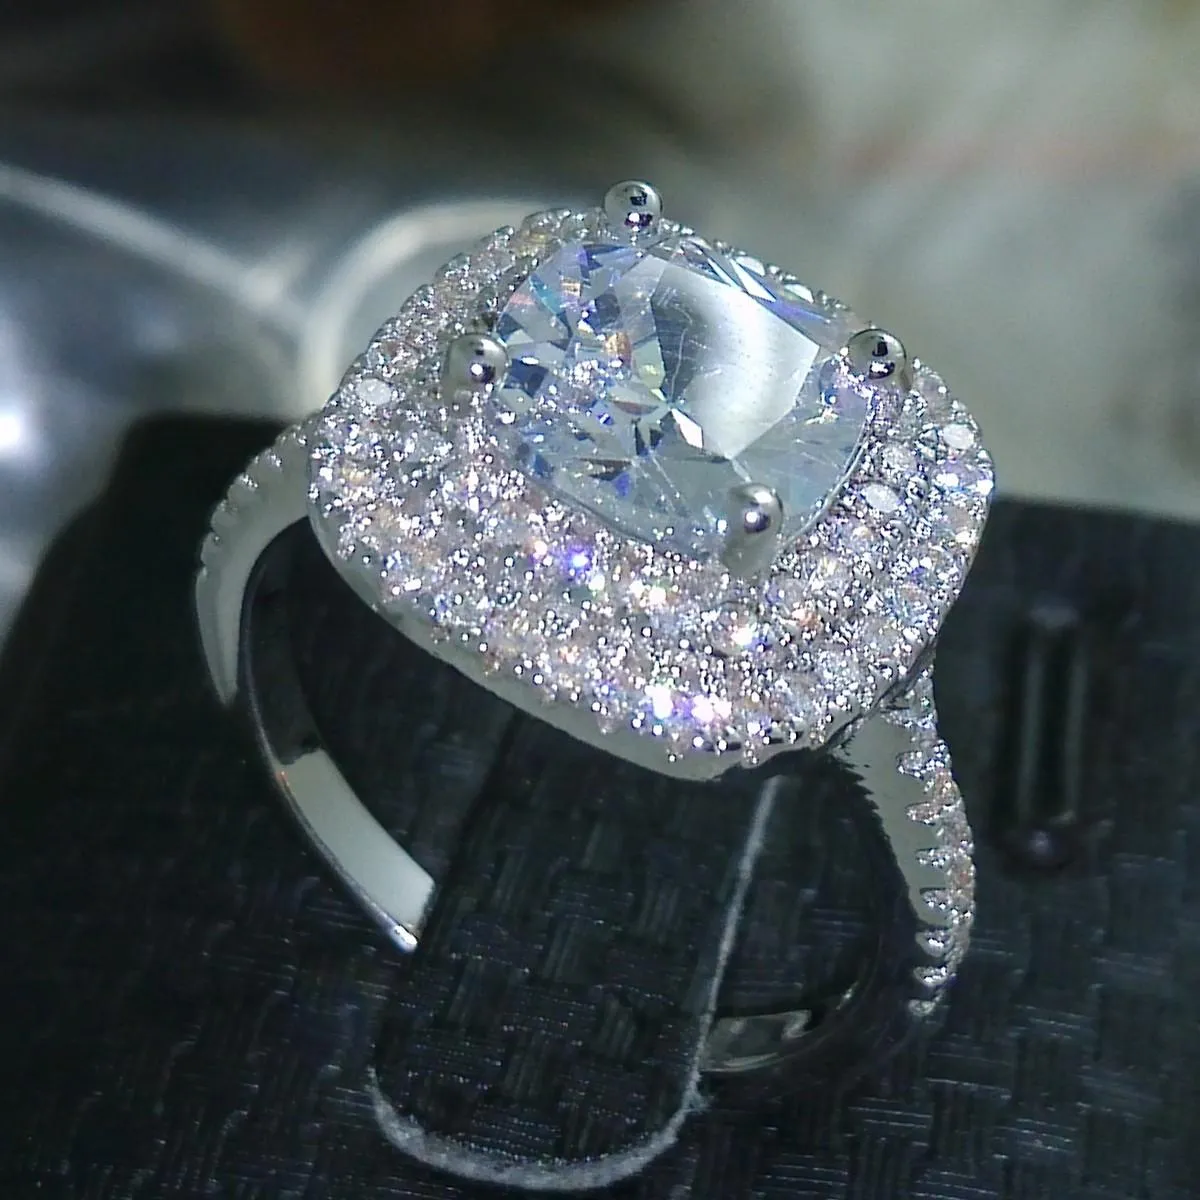 Rozmiar 5-10 luksusowa biżuteria 925 srebro wypełnione pełne topaz CZ diamentowy klejnot kobiety ślub symulowany diamentowy ślubny pierścionek zaręczynowy prezent